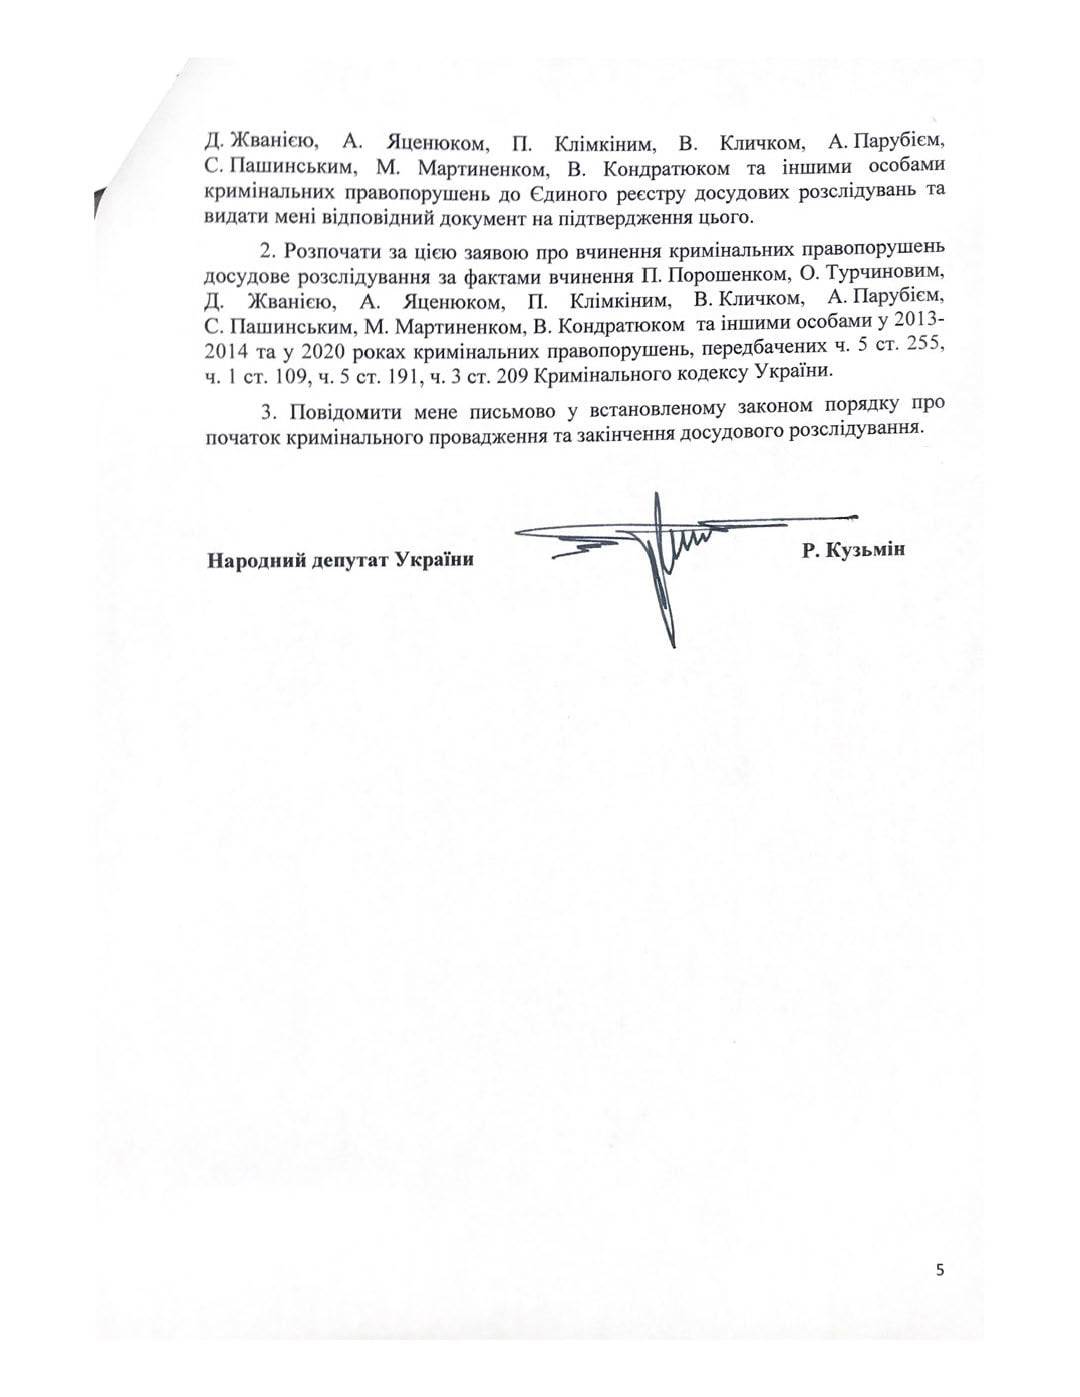 Суд обязал Офис генпрокурора открыть дело по откровениям Жвании. Скриншот фейсбук-страницы Кузьмина